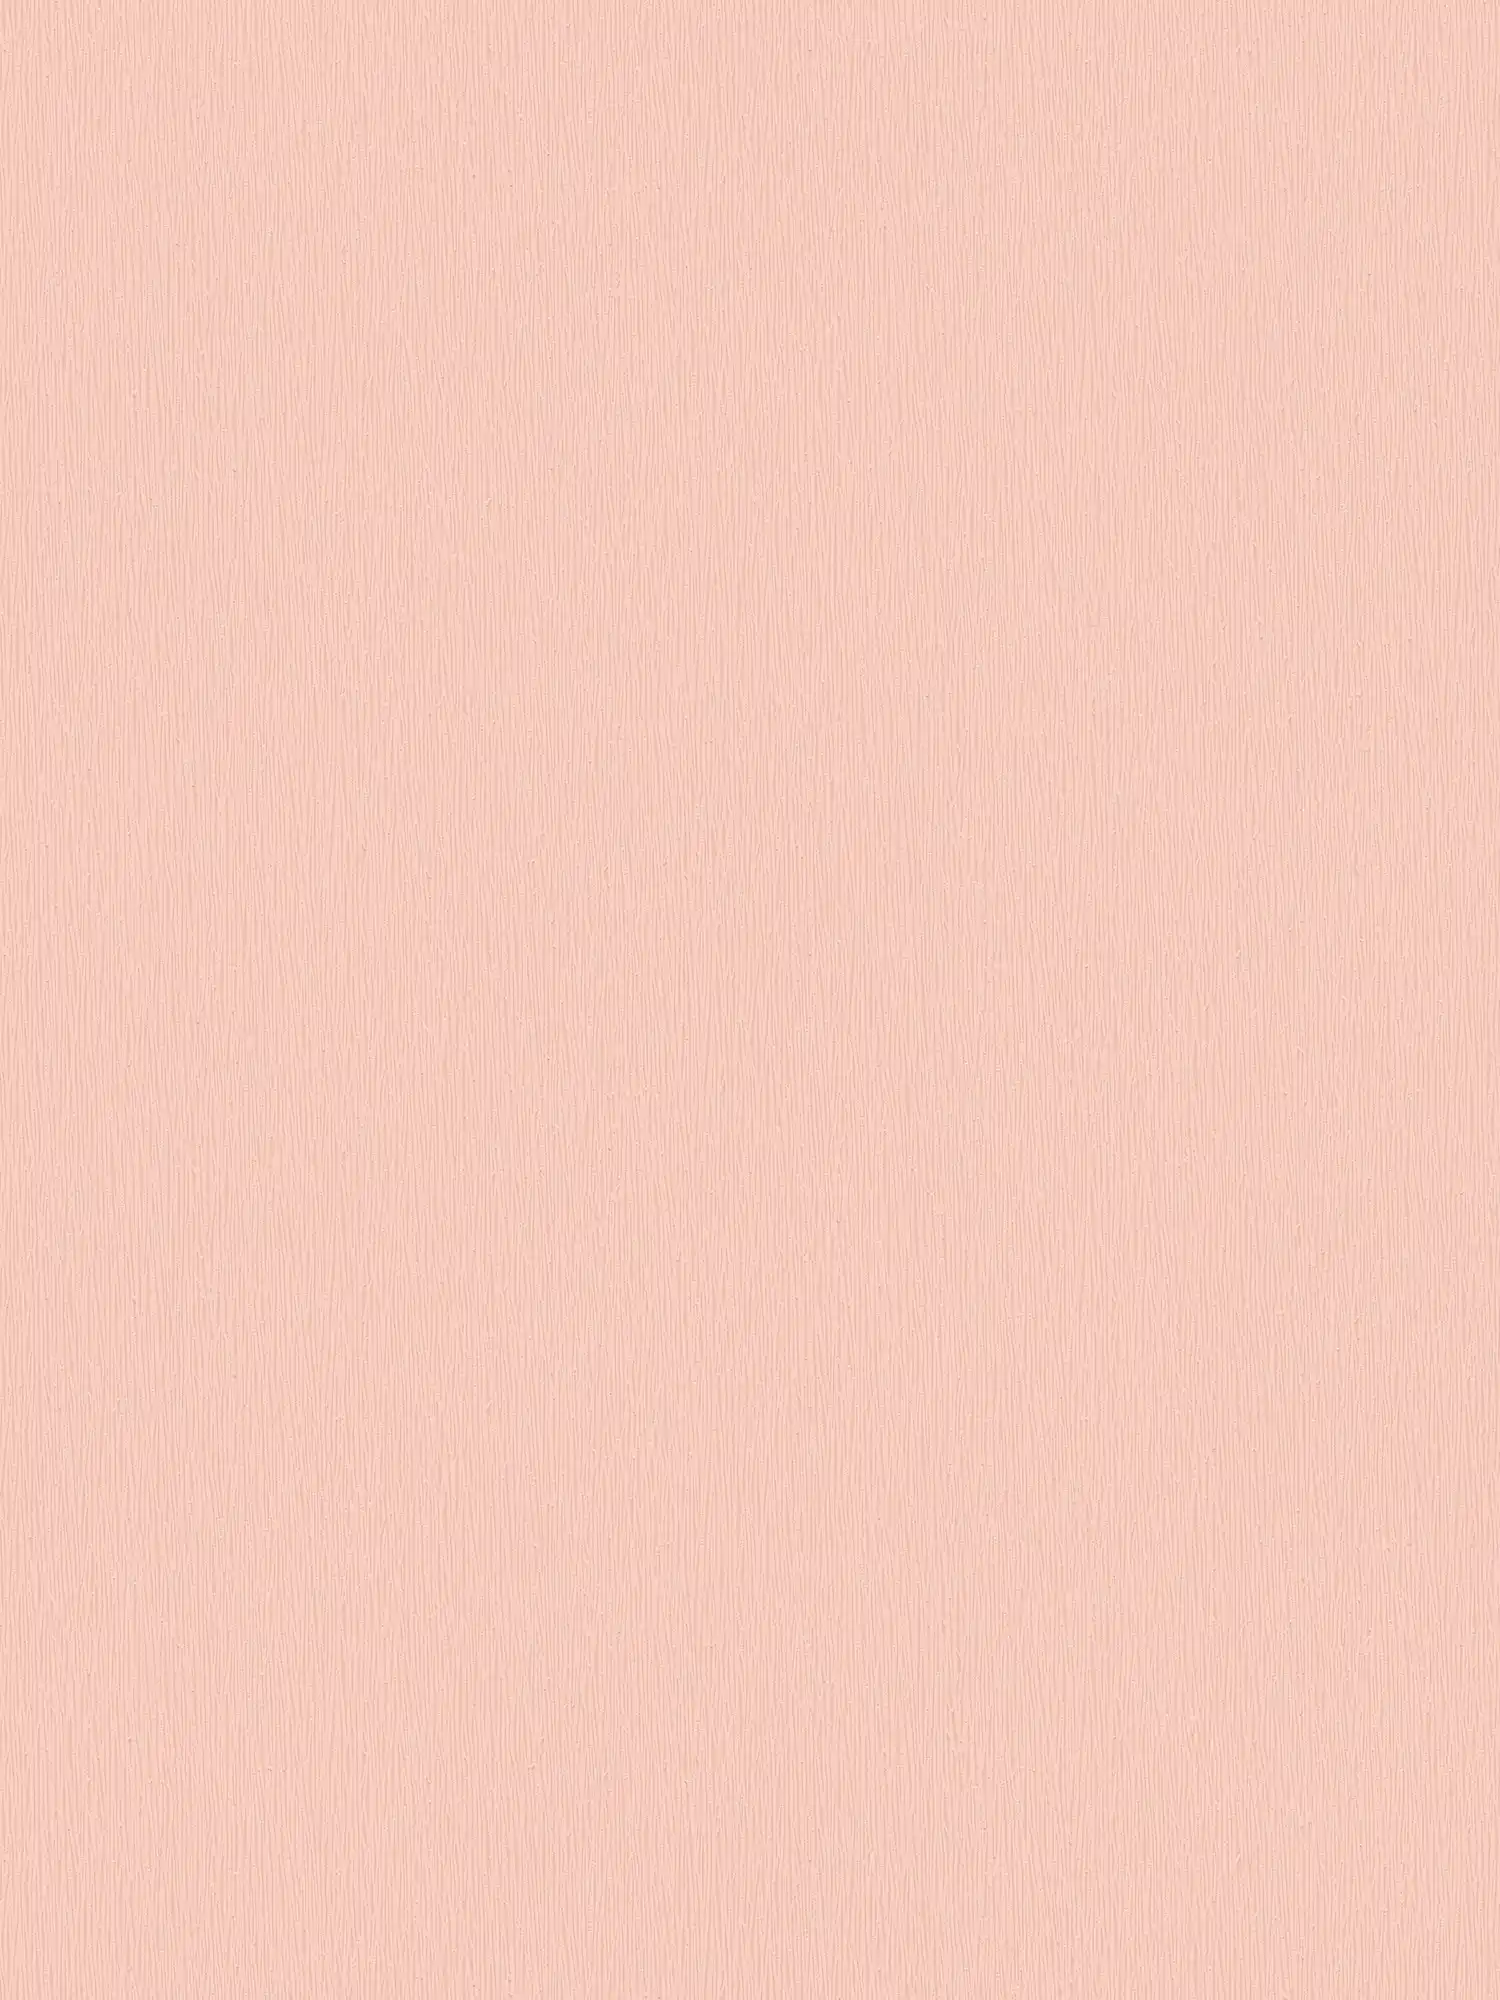 Roze vliesbehang met monochroom structuurontwerp - roze, wit
